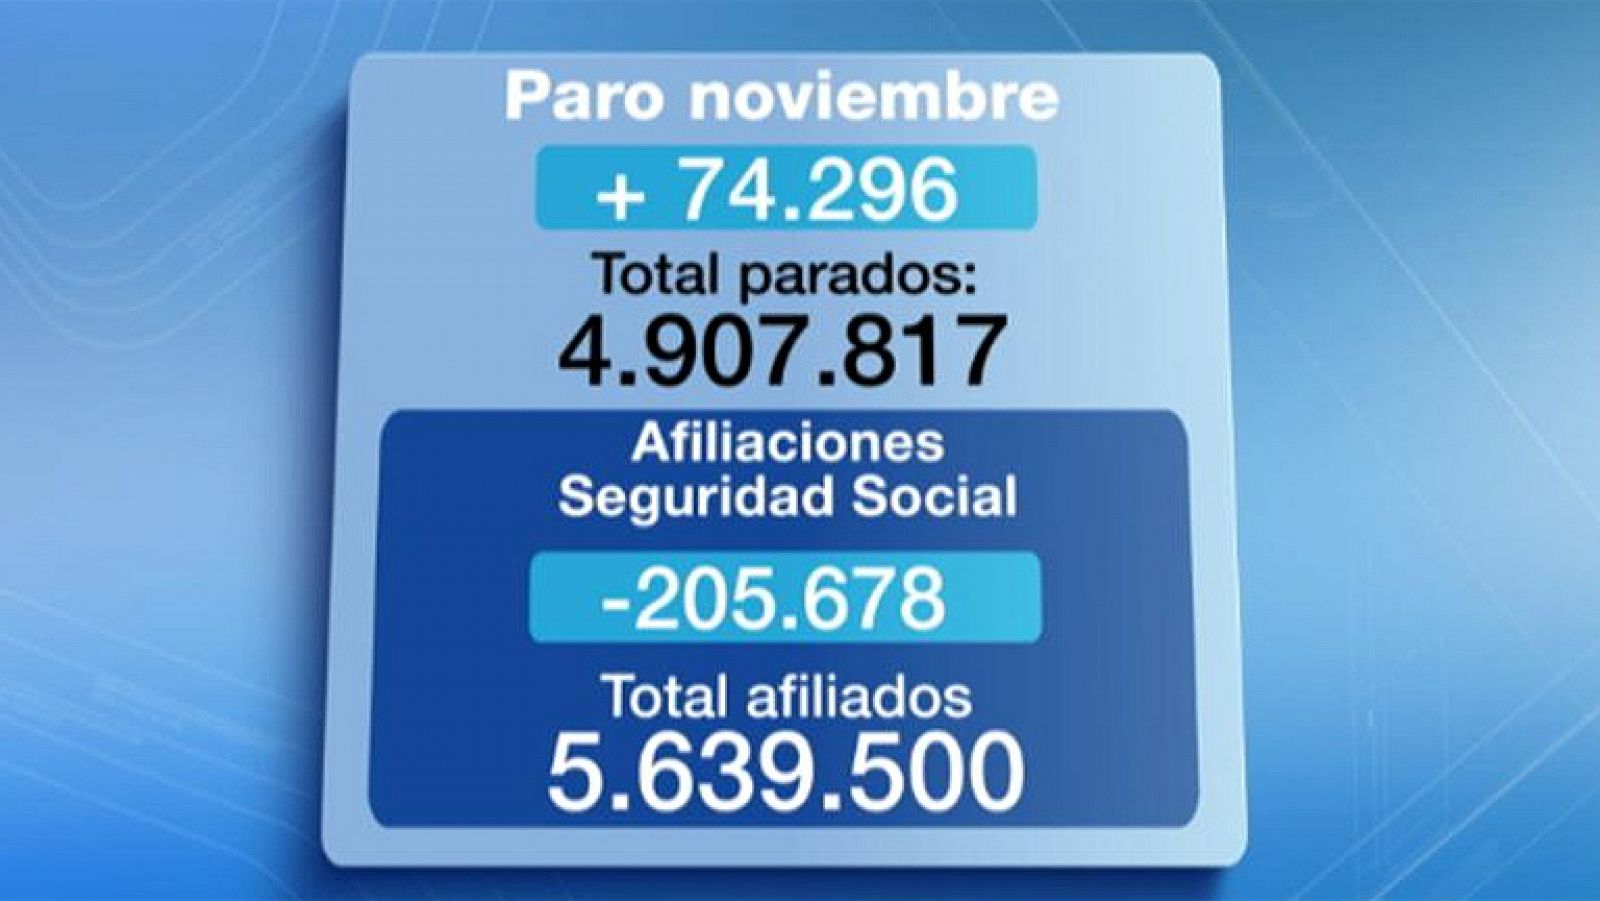 El paro registrado sube en 74.296 personas en noviembre